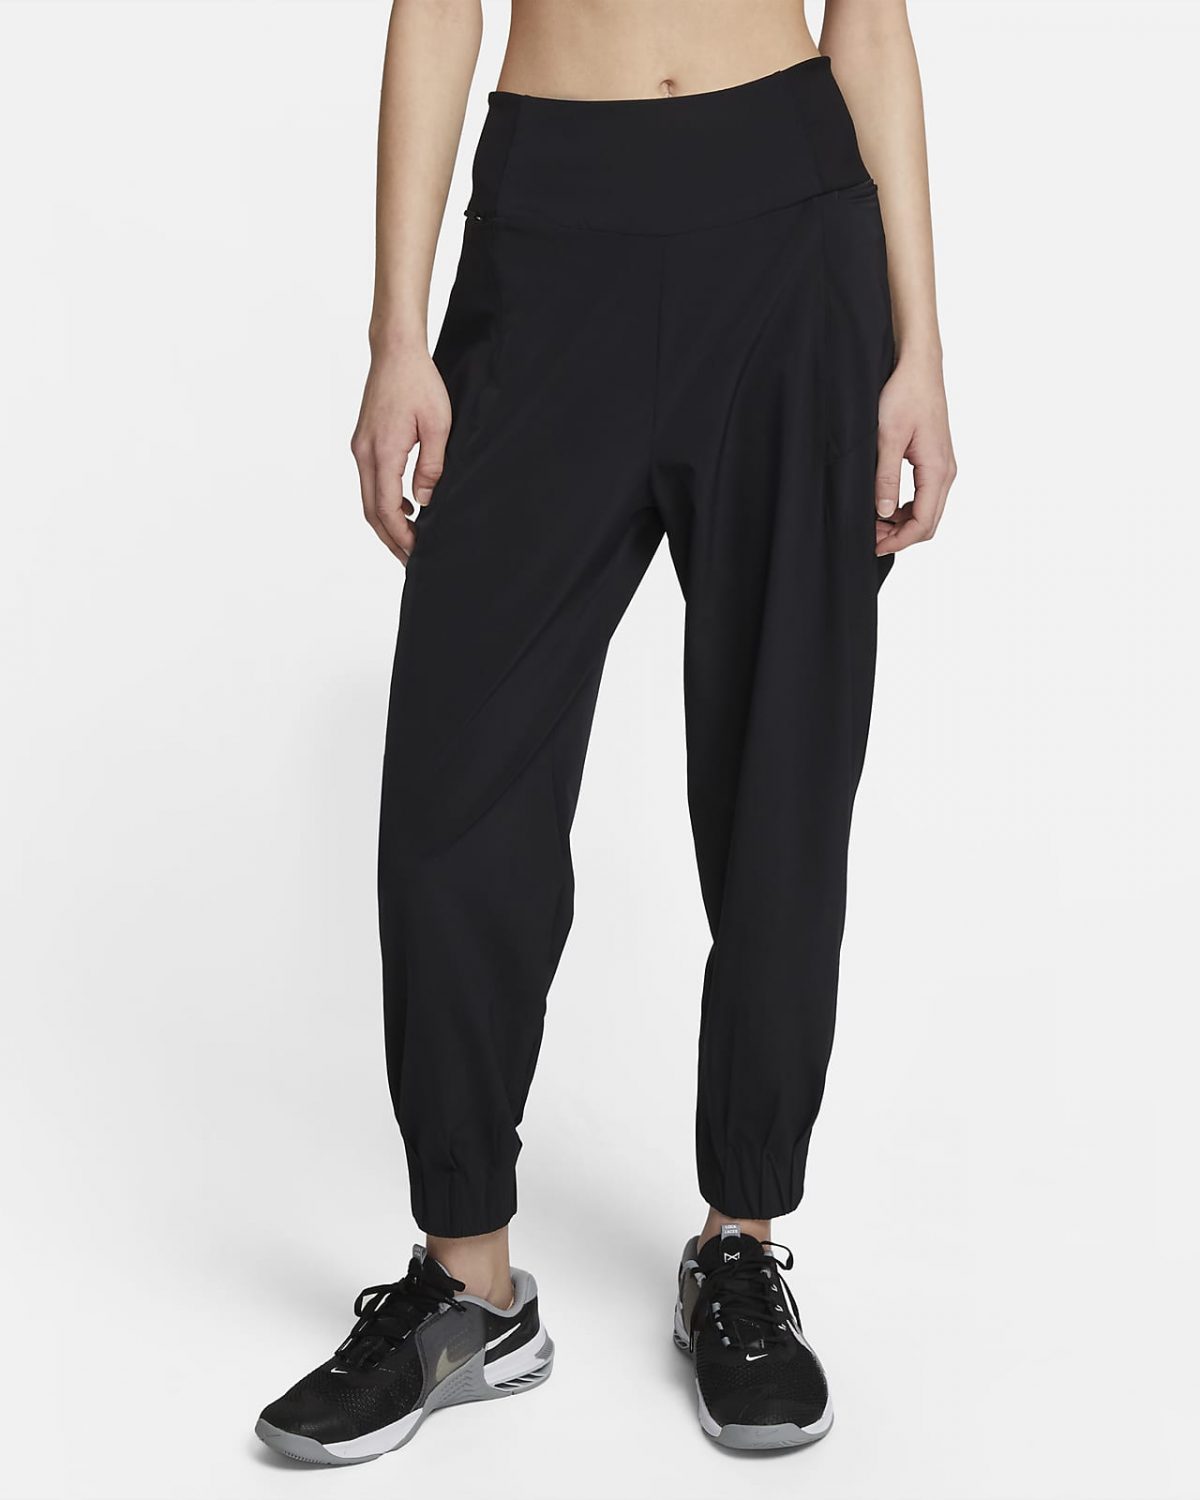 Женские брюки Nike Dri-FIT Bliss фото